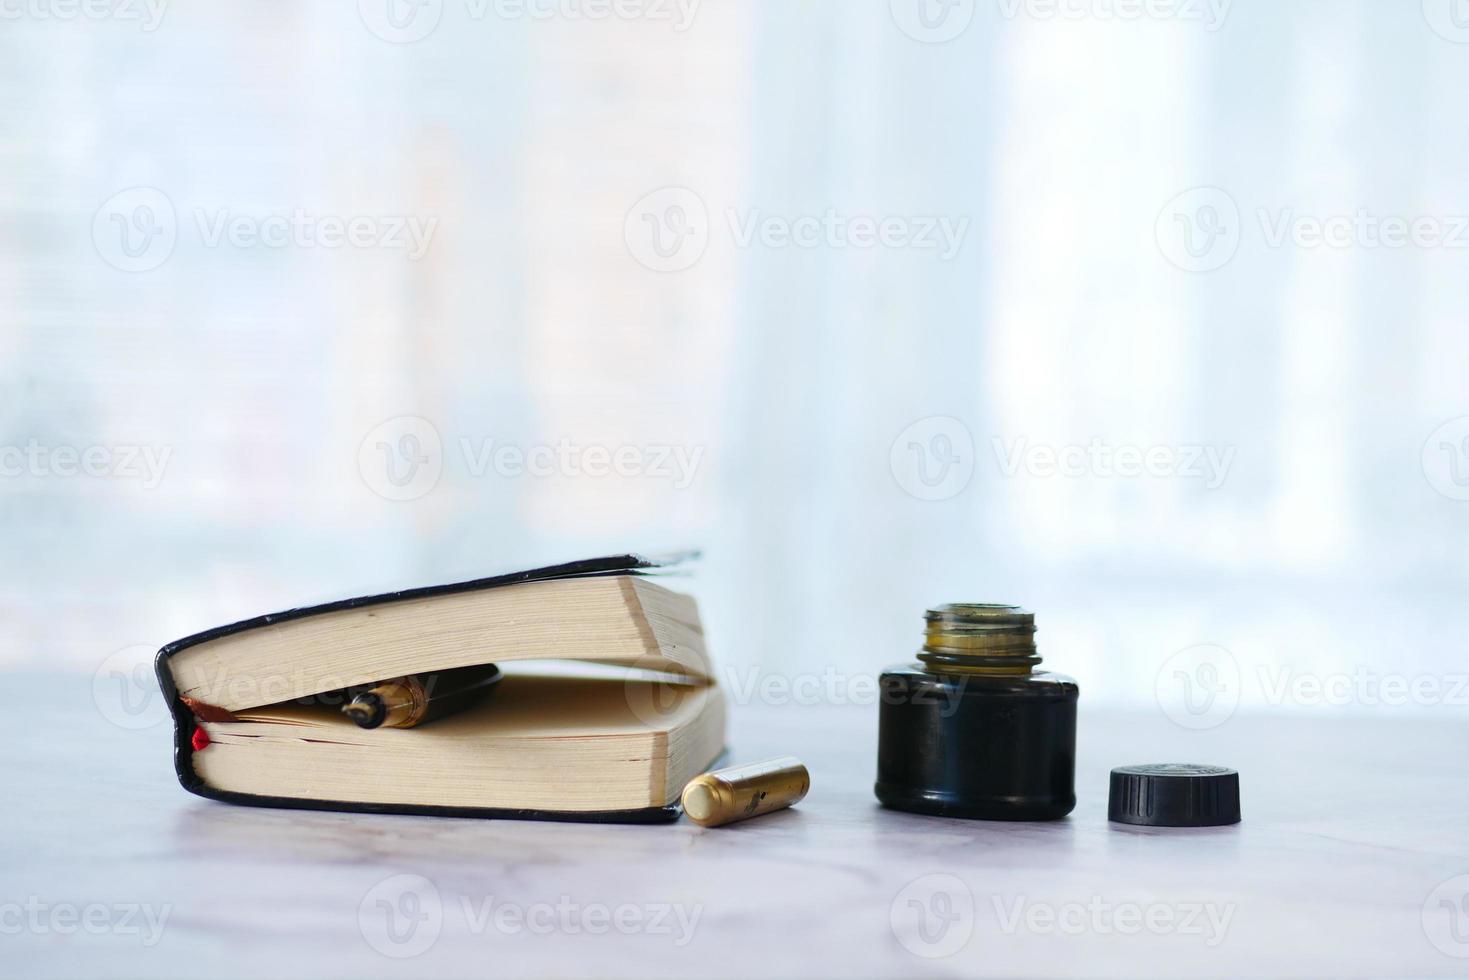 bläck, tomt papper och reservoarpenna på bordet foto